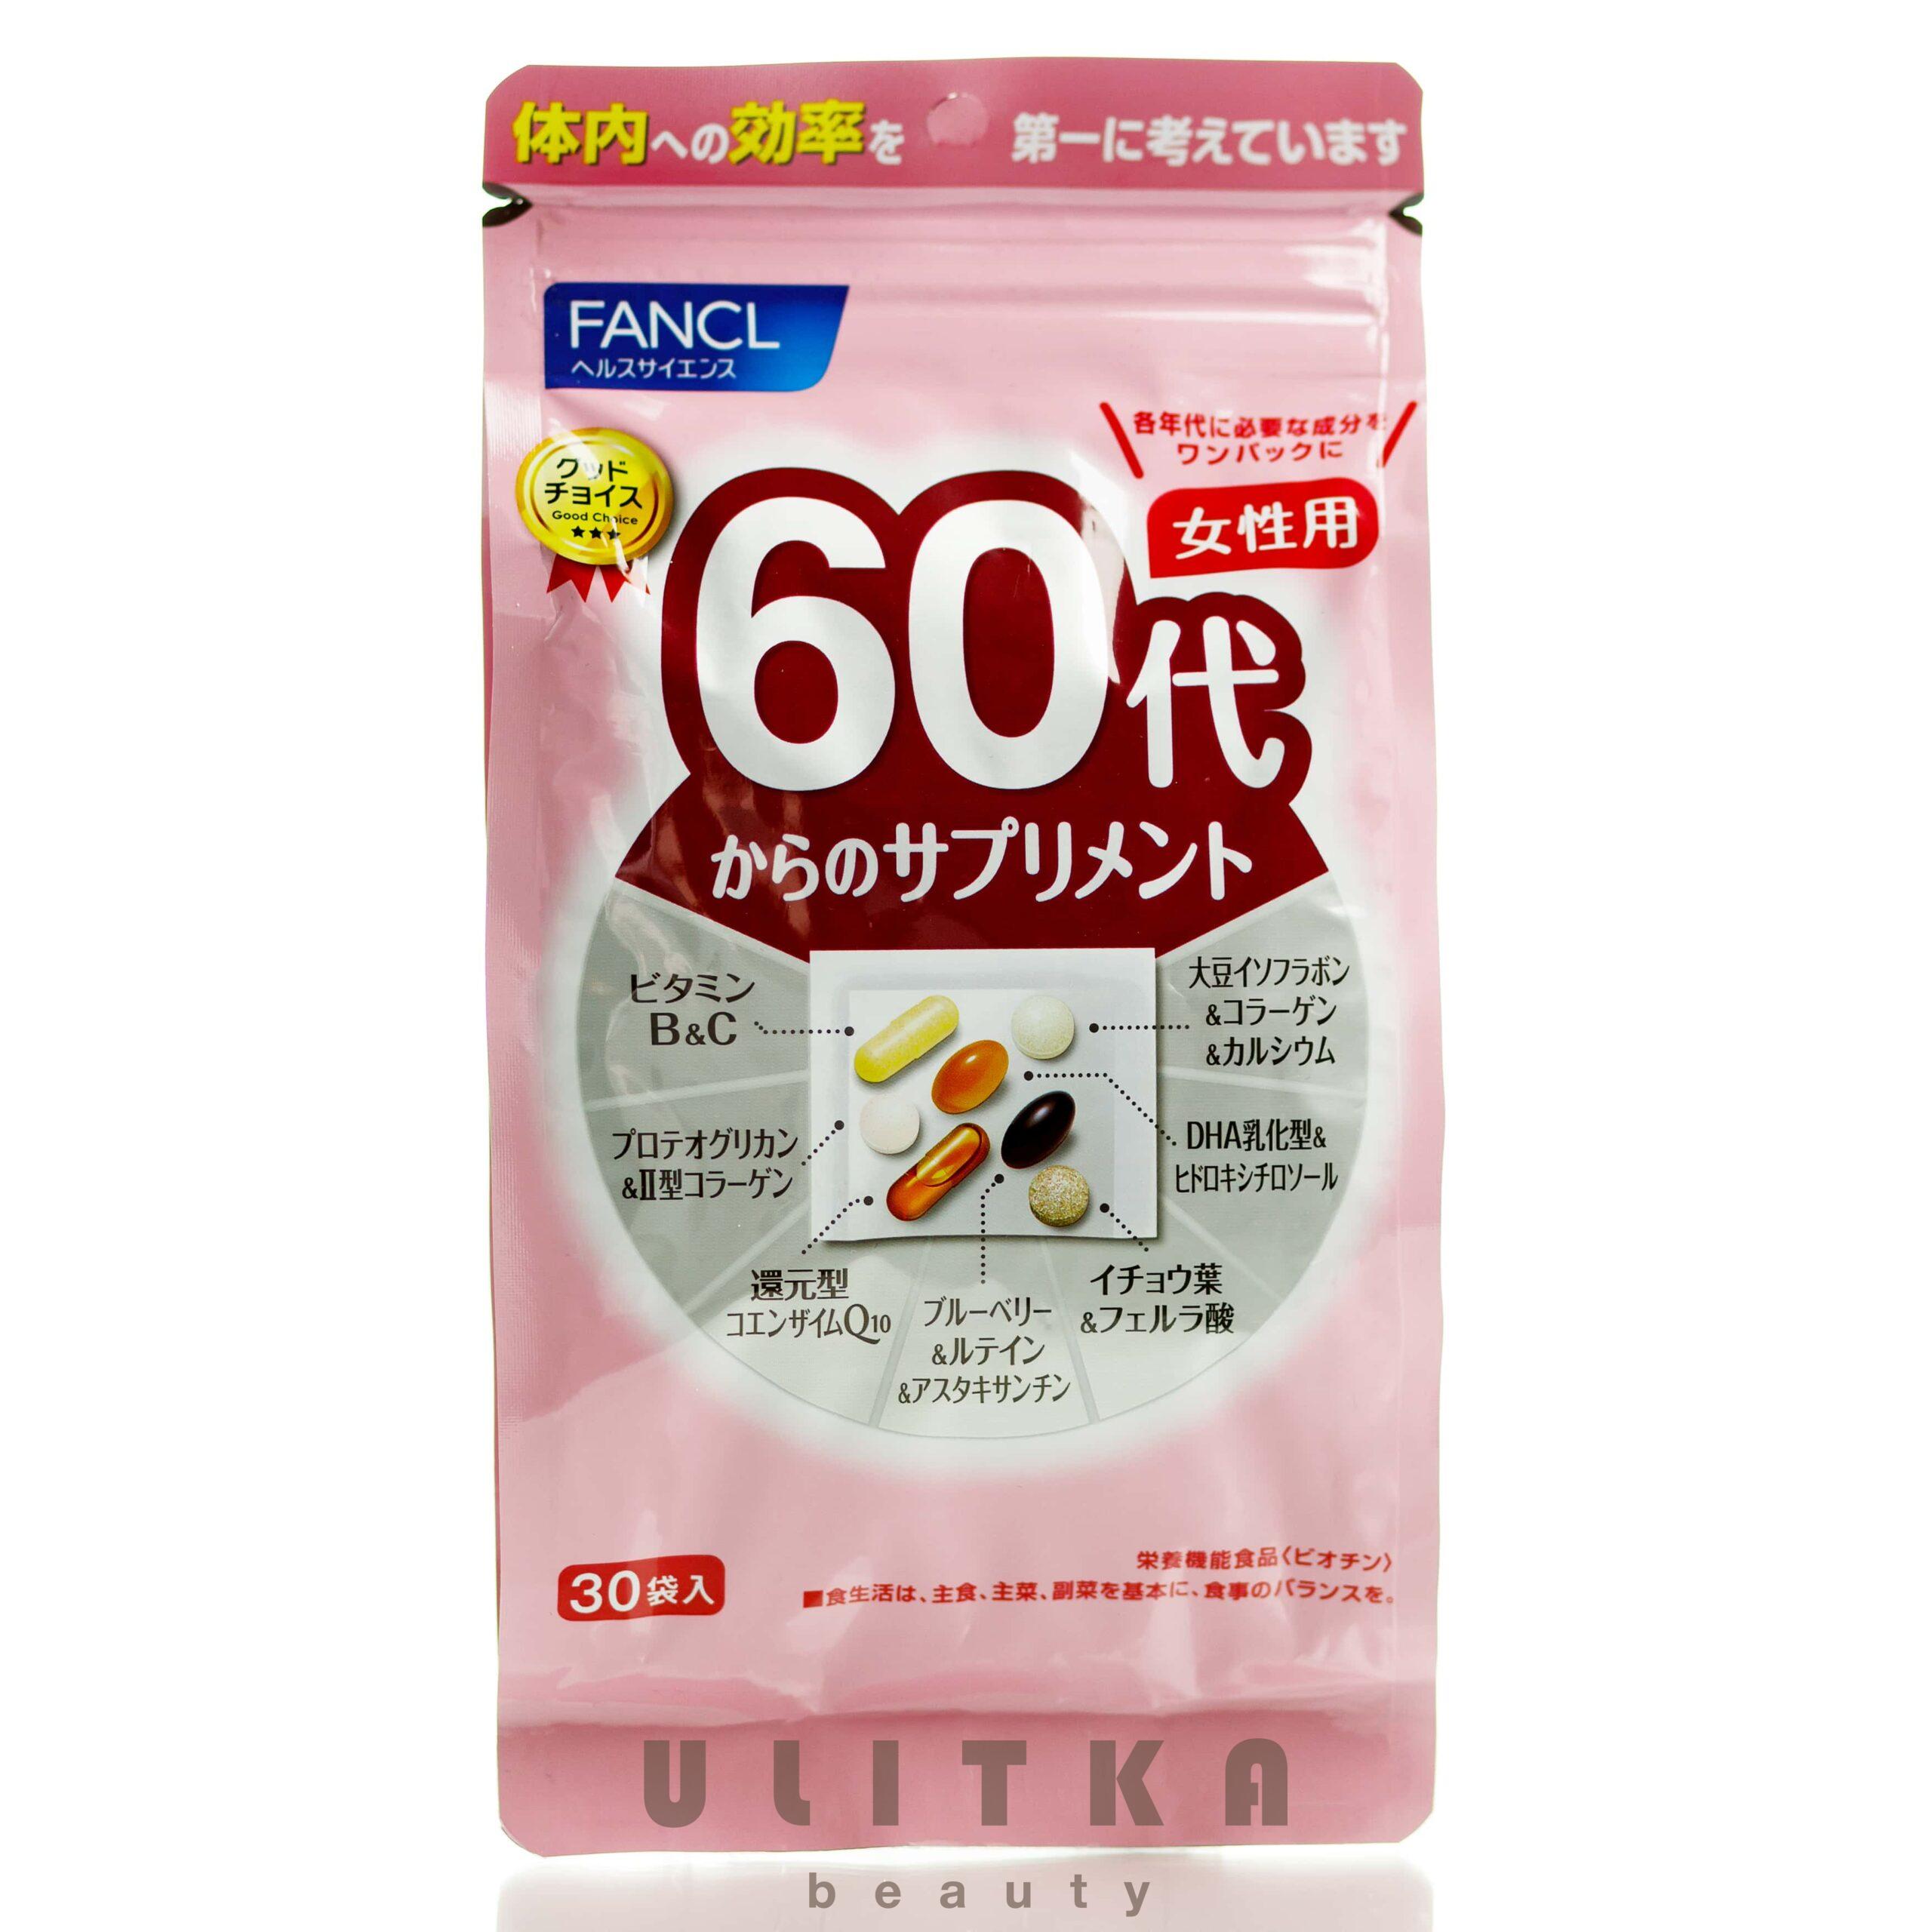 Женщинам после 60 витамины отзывы. Японские витамины Фанкл для женщин 30. Японские витамины FANCL для женщин 60. Витамины Фанкл 60+ Япония. FANCL витамины 40 для женщин японские.